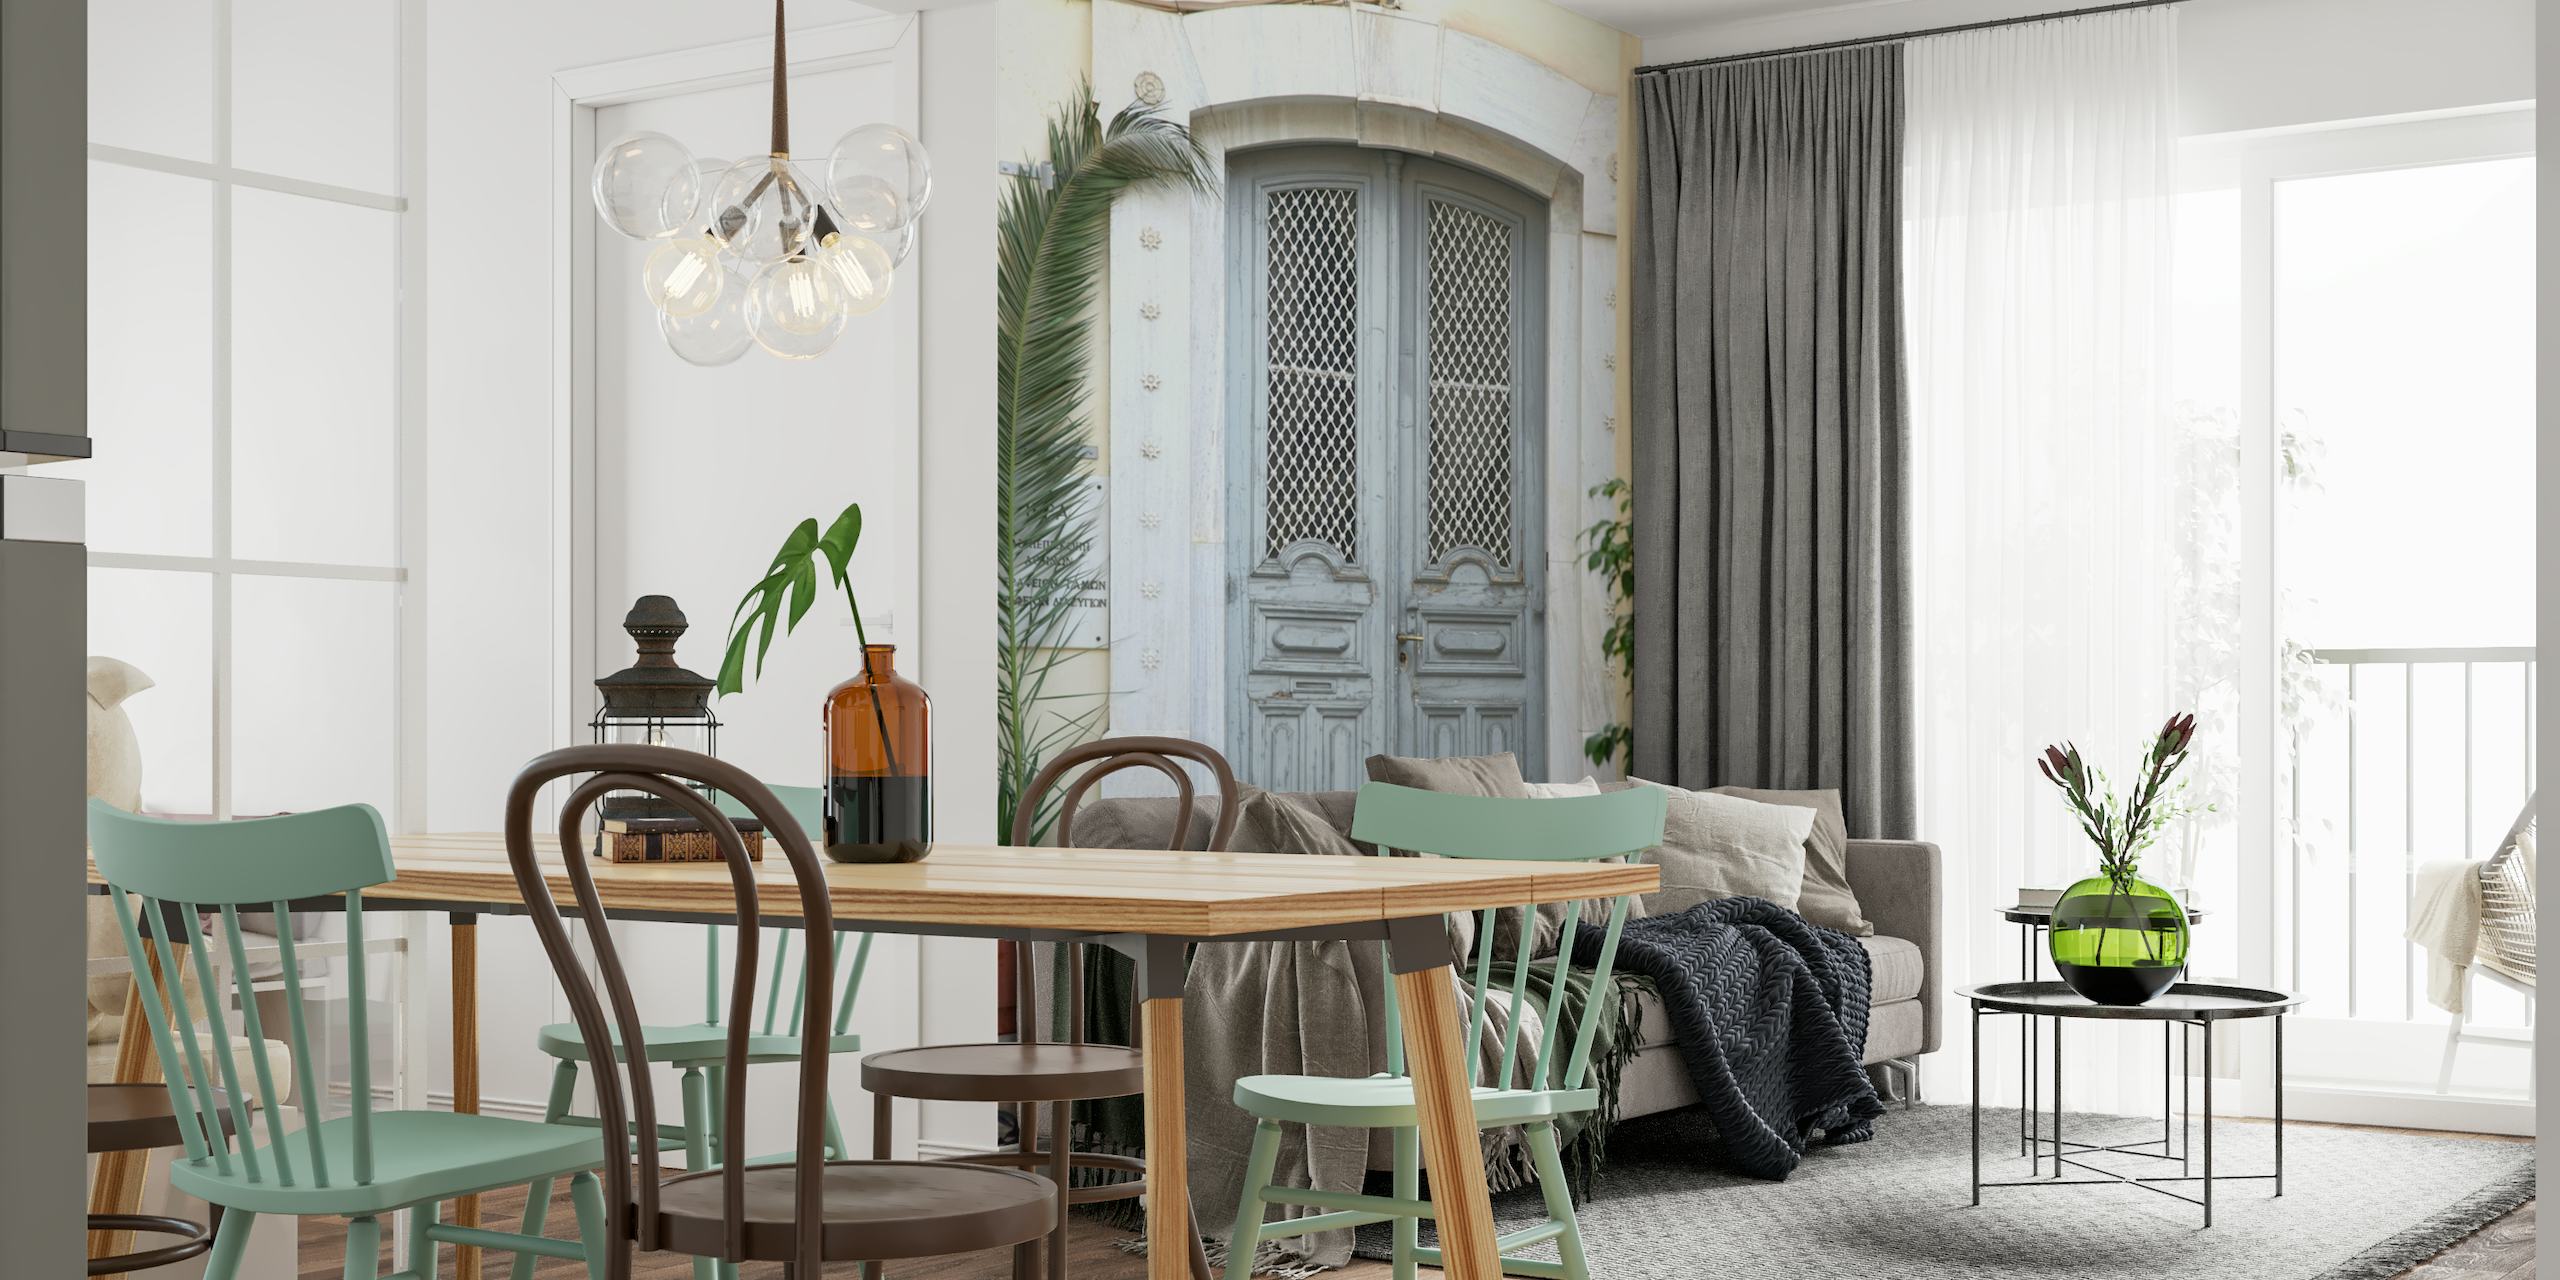 Eine Fototapete mit einer grauen Tür im griechischen Stil und einer Palmenpflanze an der Seite, die eine ruhige mediterrane Atmosphäre hervorruft.